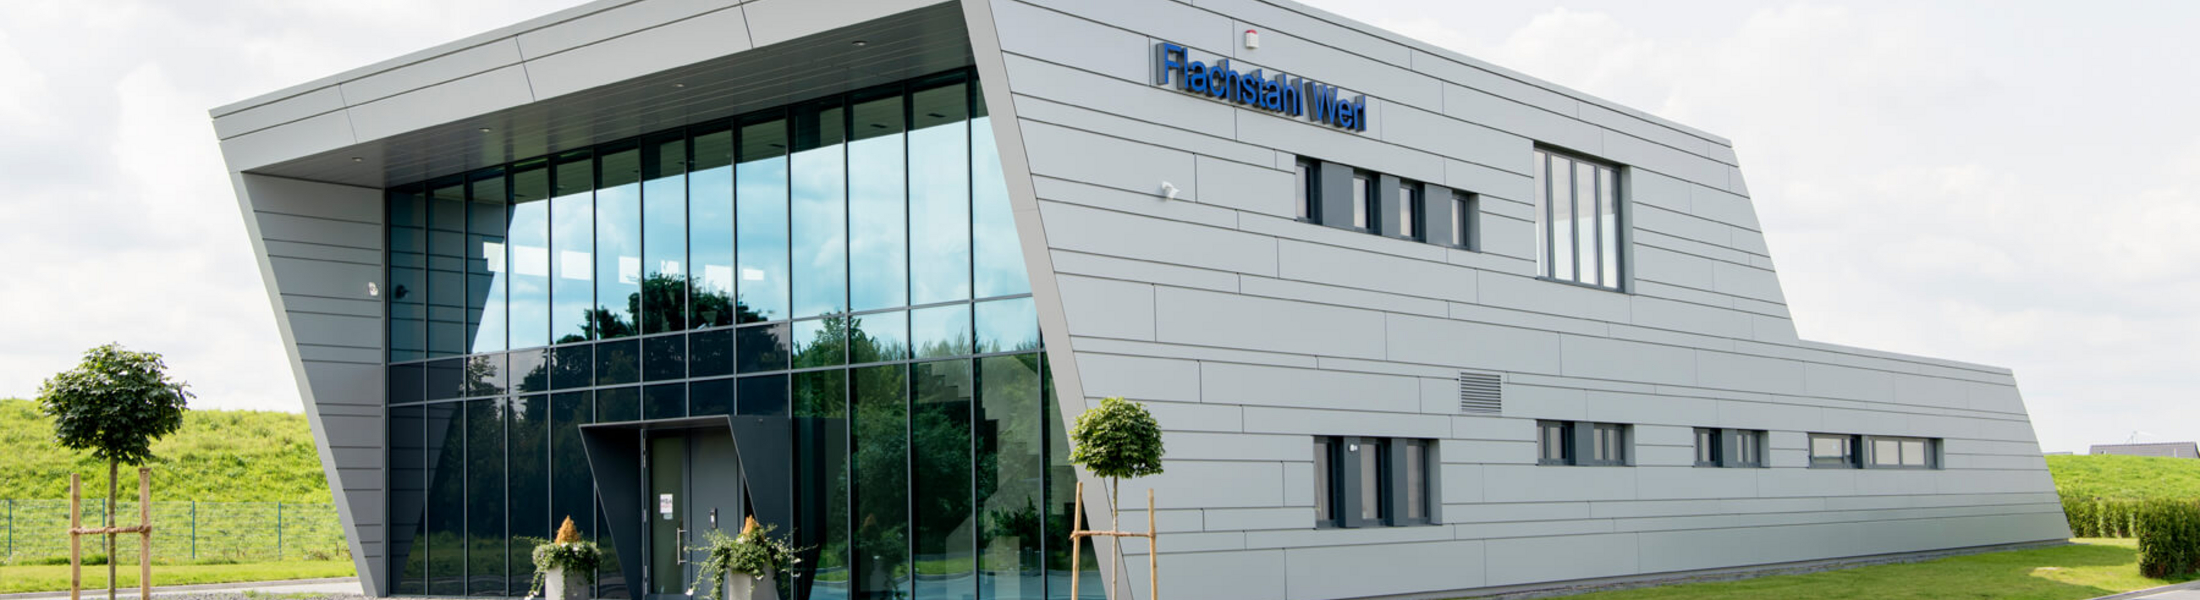 Flachstahl Werl GmbH & Co.KG, Werl